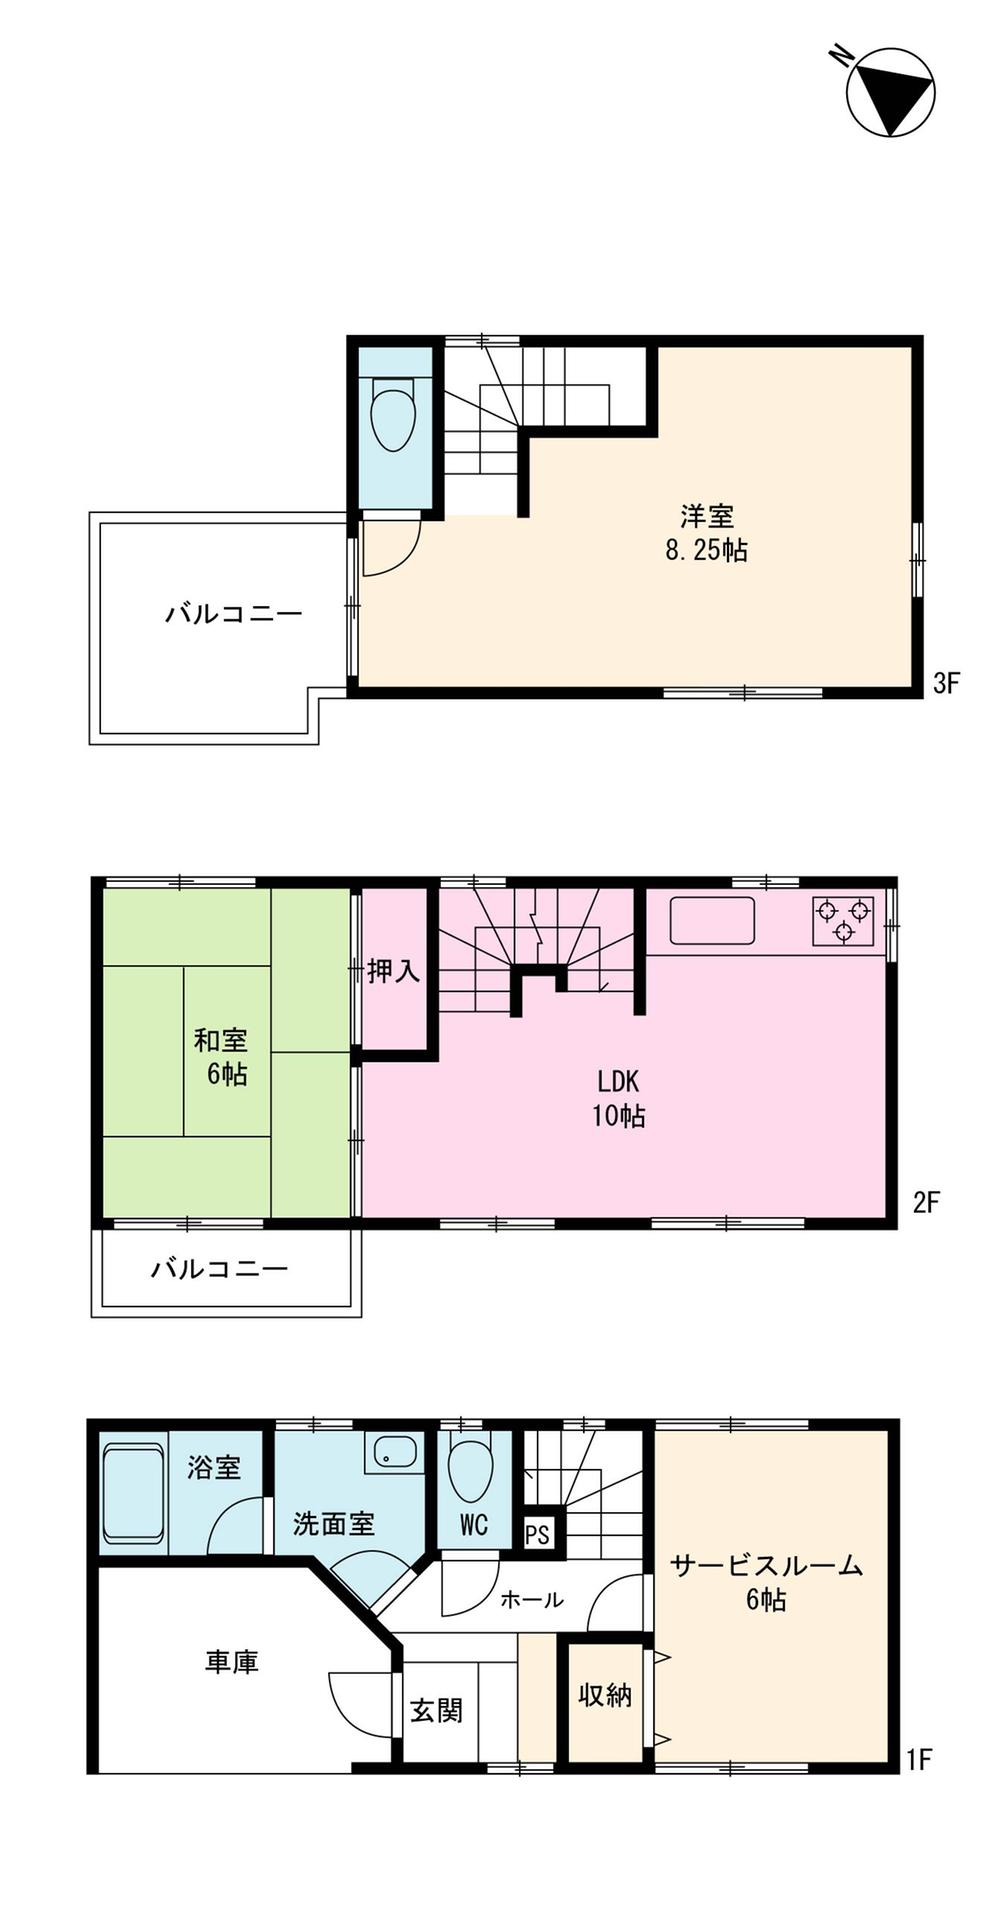 Floor plan. 28.5 million yen, 3LDK, Land area 52.94 sq m , Building area 84.45 sq m